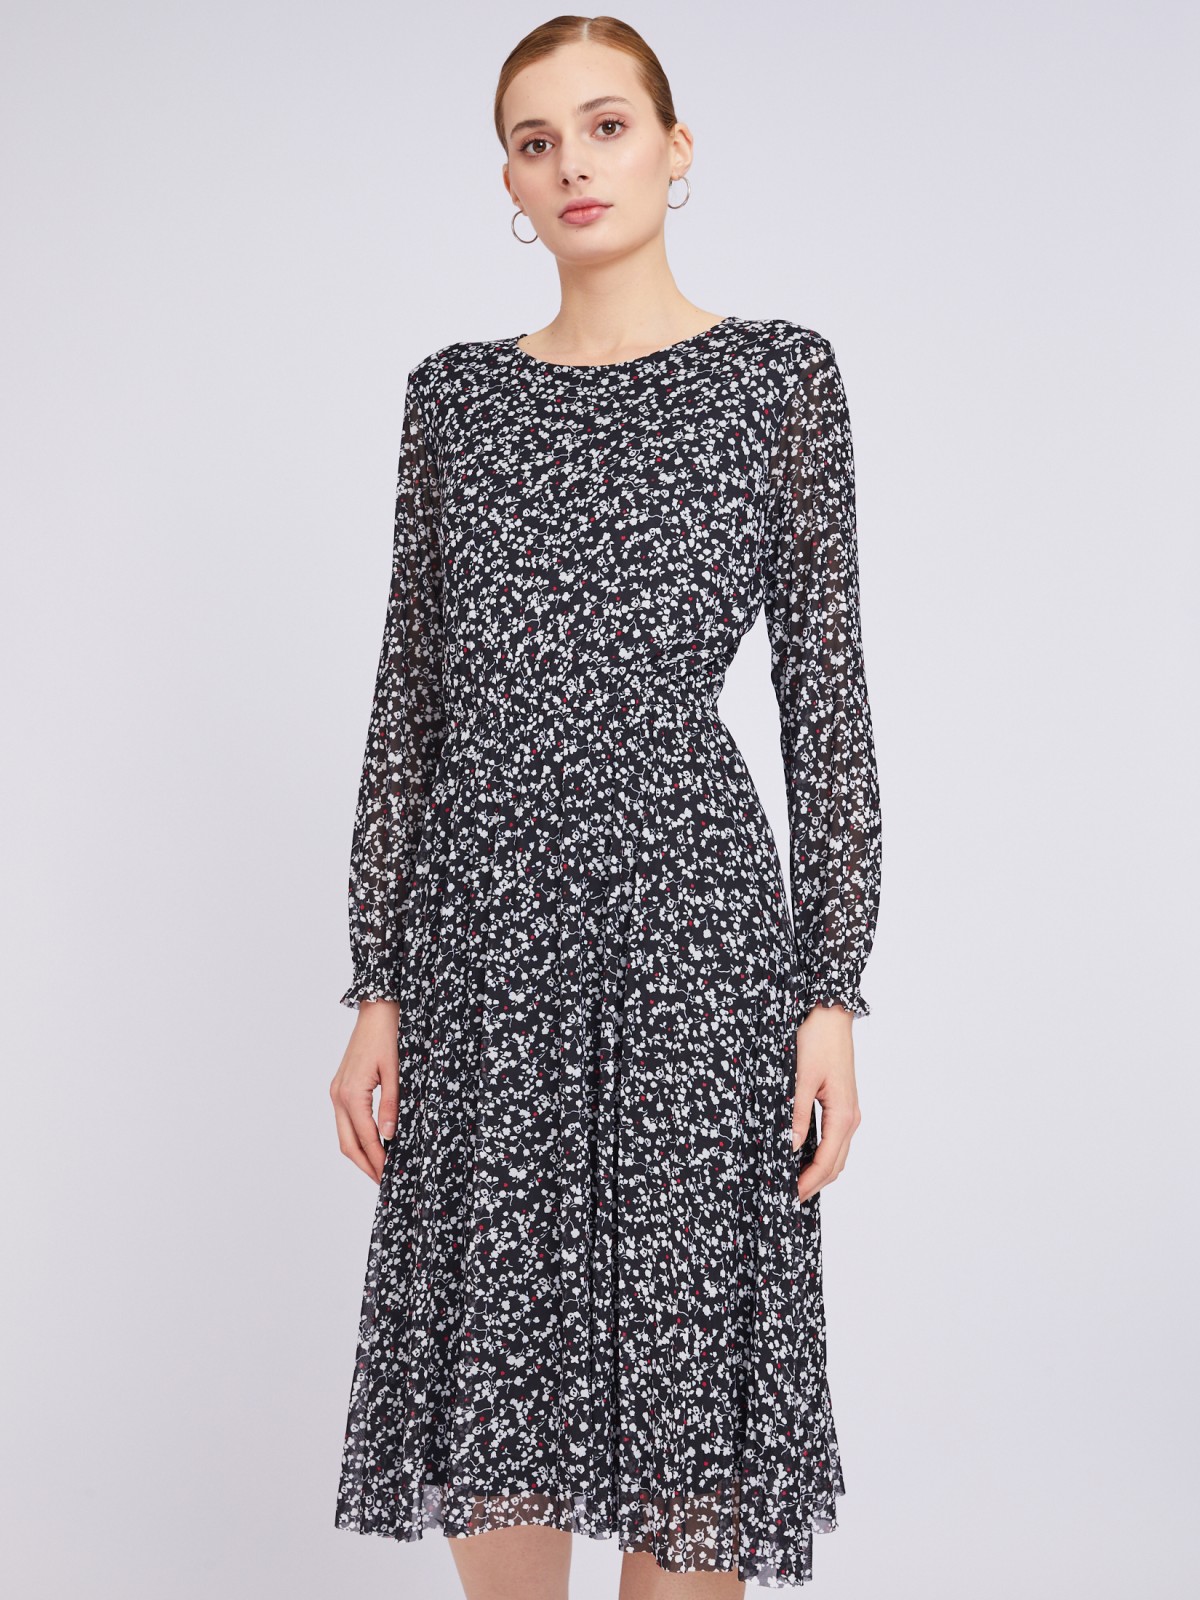 Принтованное платье длины миди из сетки zolla 023318159012, цвет черный, размер M - фото 1